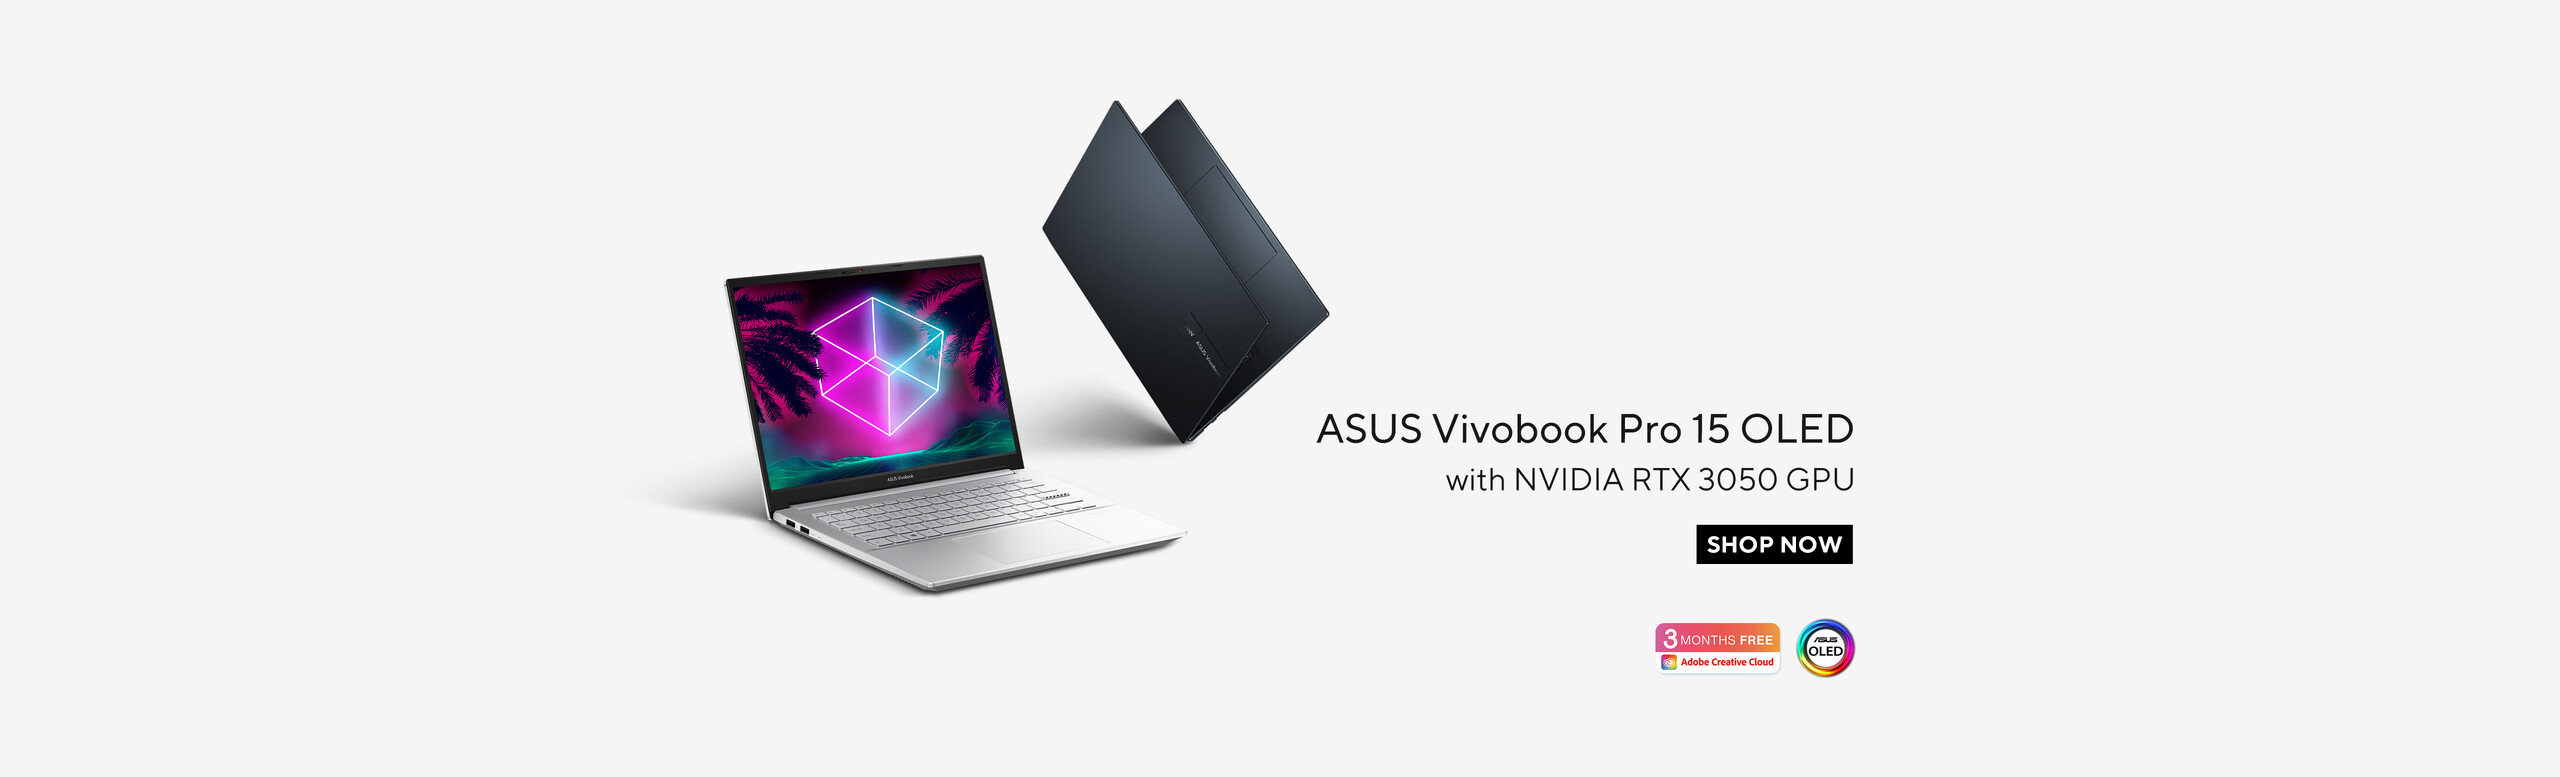 ASUS Vivobook Pro 15 OLED (M3500)